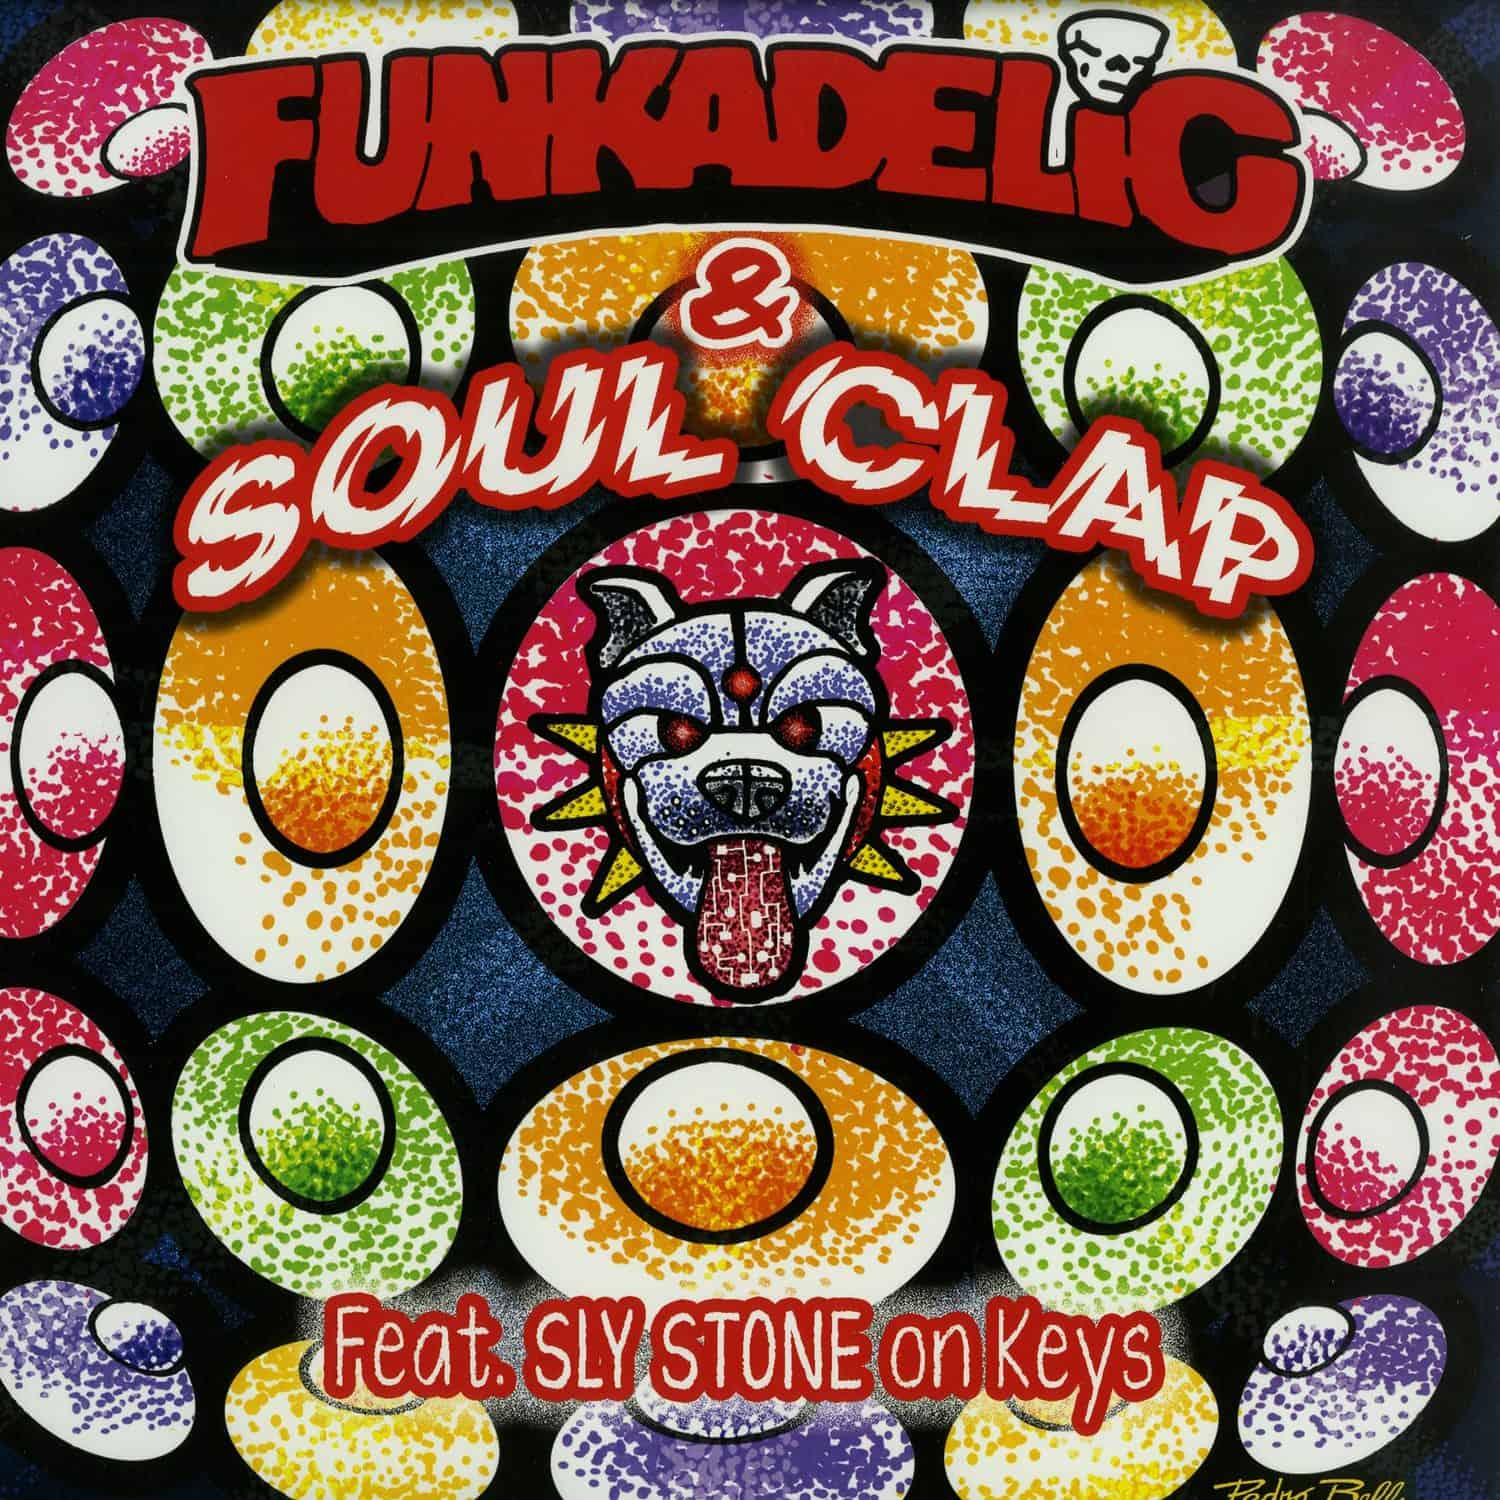 Funkadelic & Soul Clap - IN DA KAR